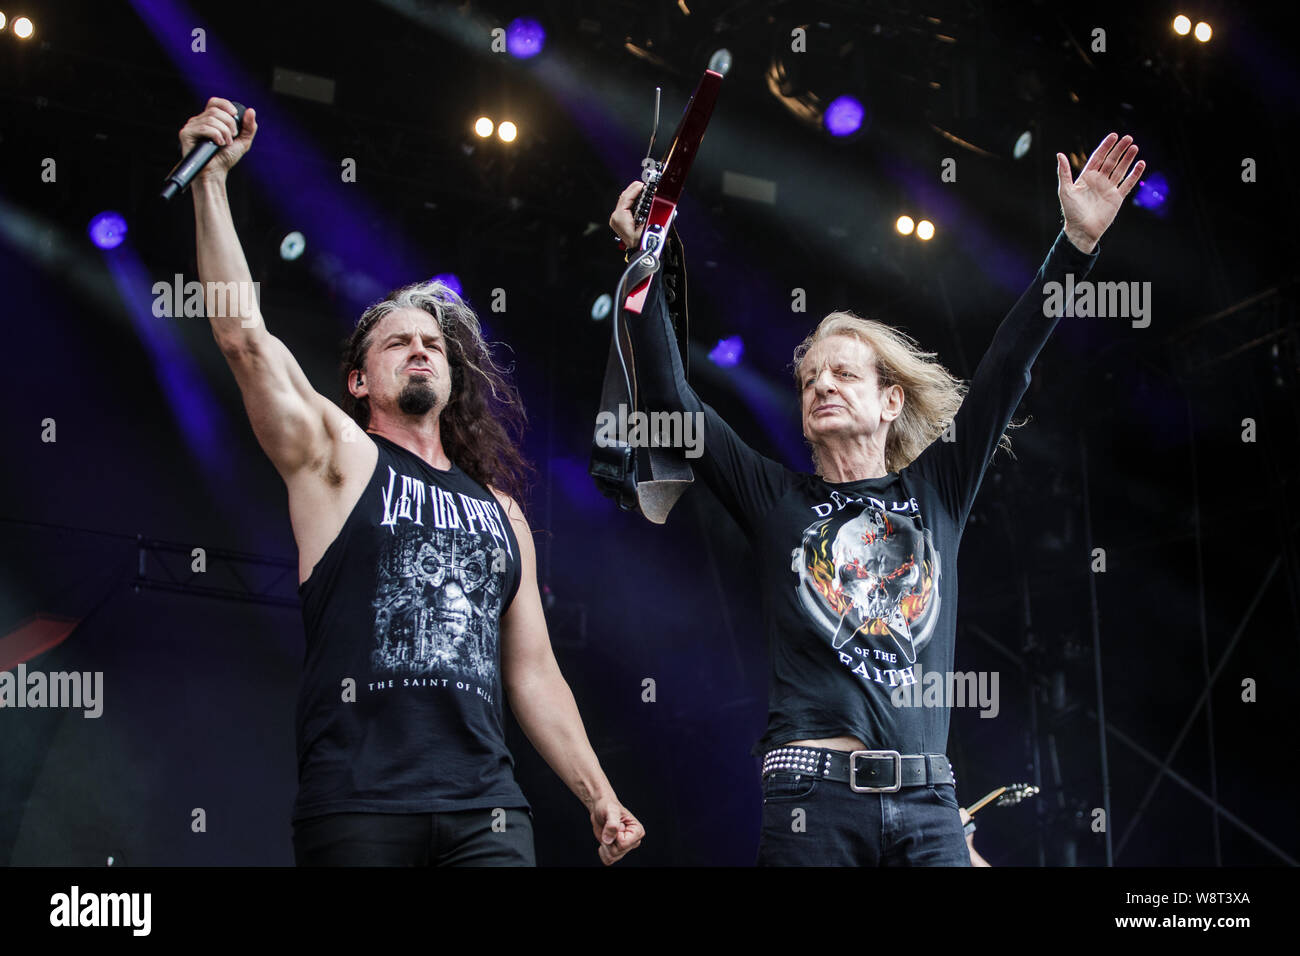 La légende de Judas Priest, KK Downing rejoint Ross The Boss pendant qu'il effectue sur scène au Bloodstock Open Air Festival, UK, 11 août, 2019. Banque D'Images